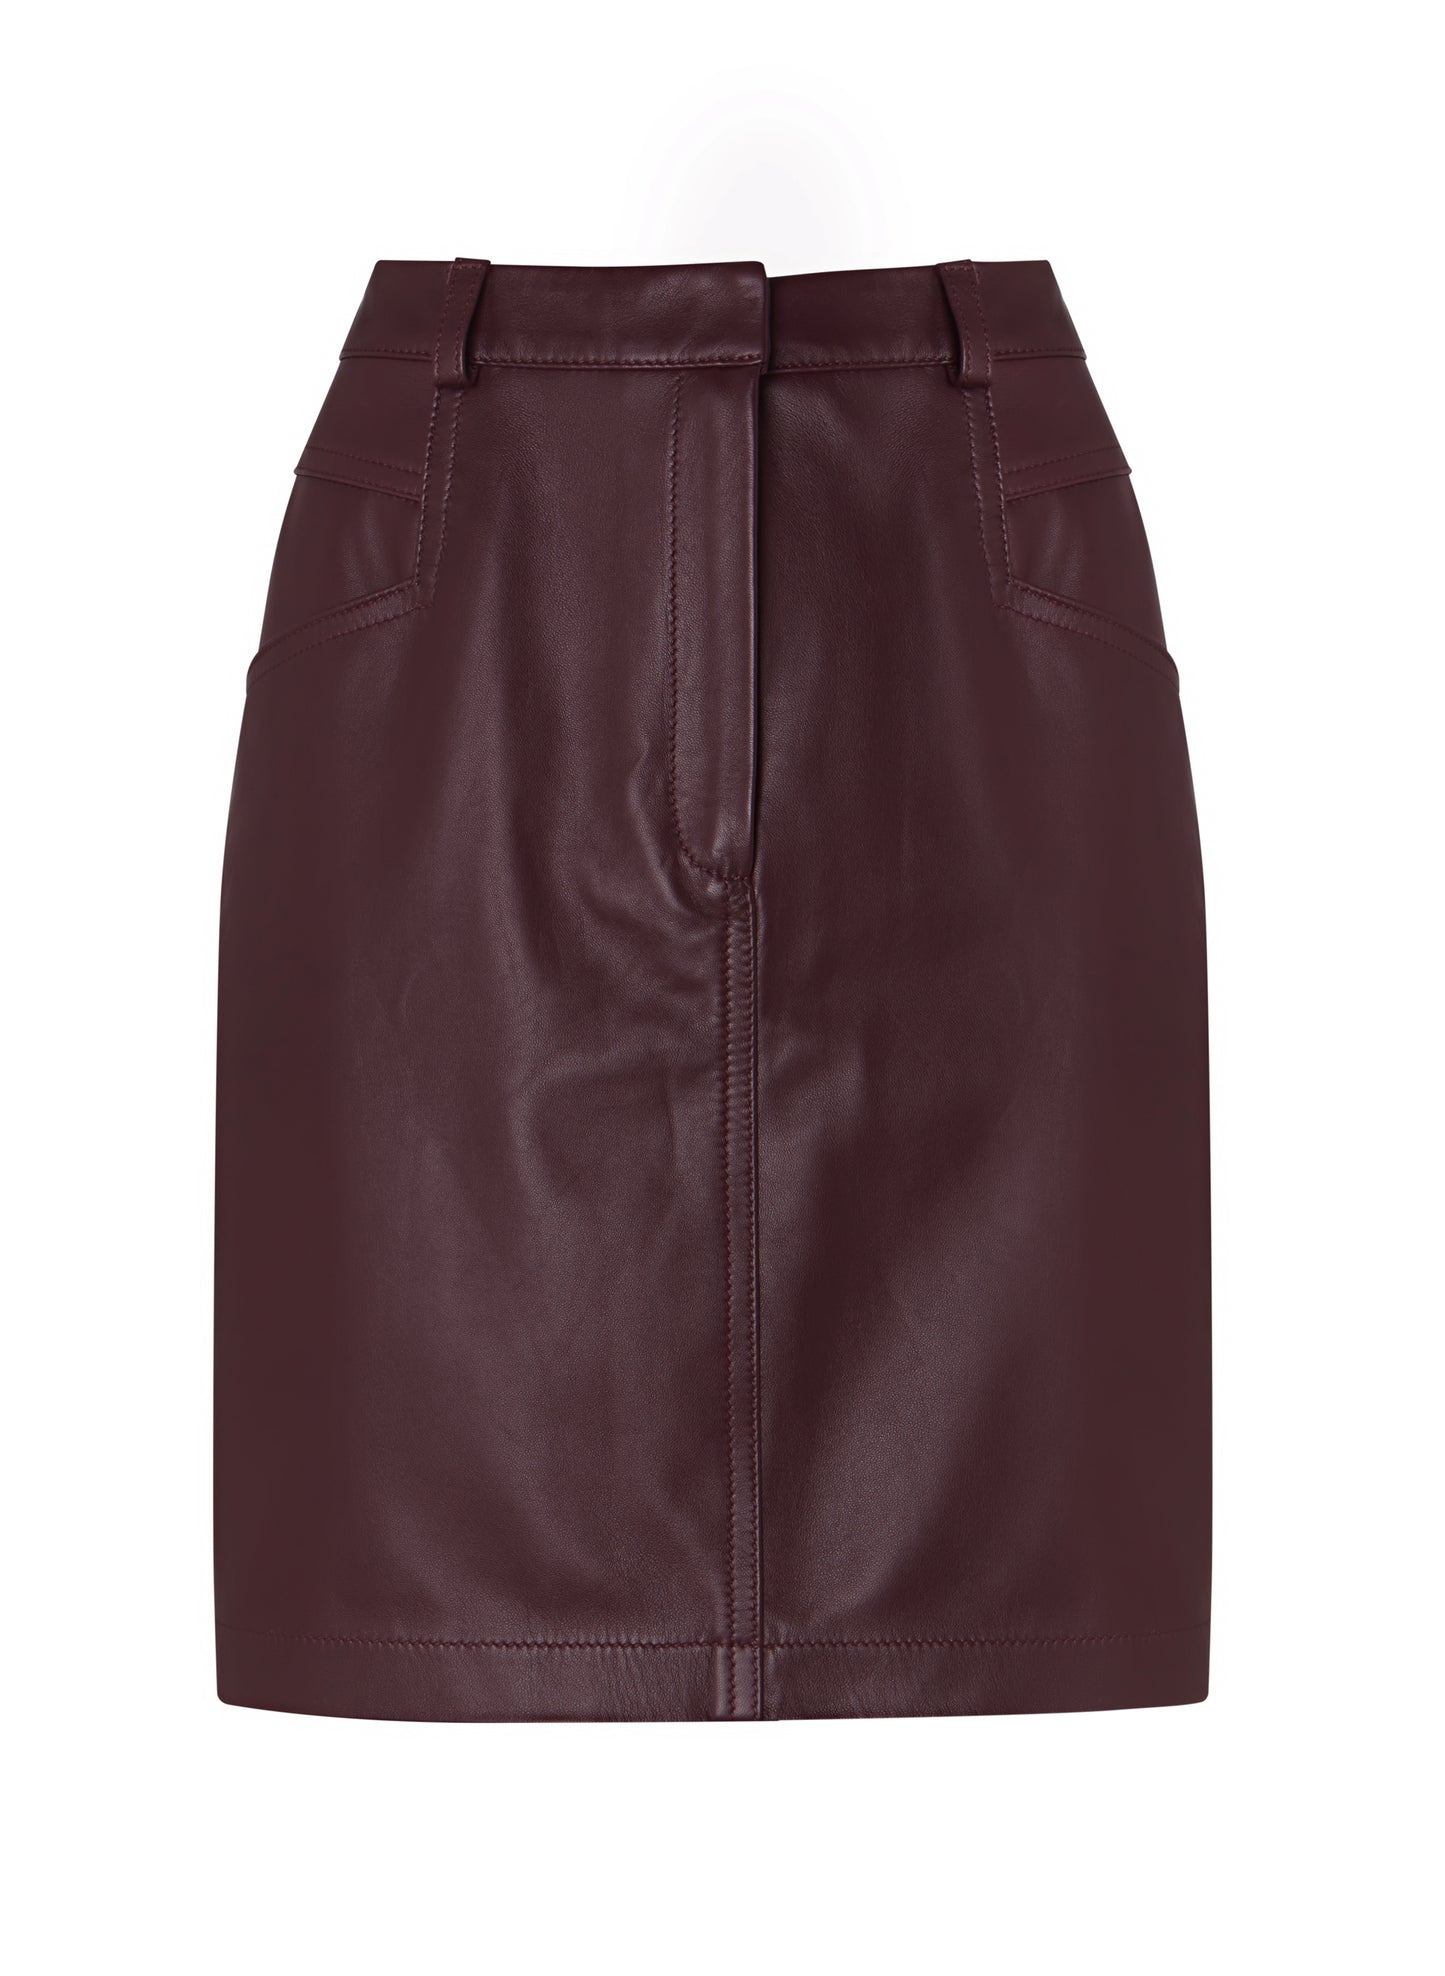 Sacha Upcycled Leather Skirt